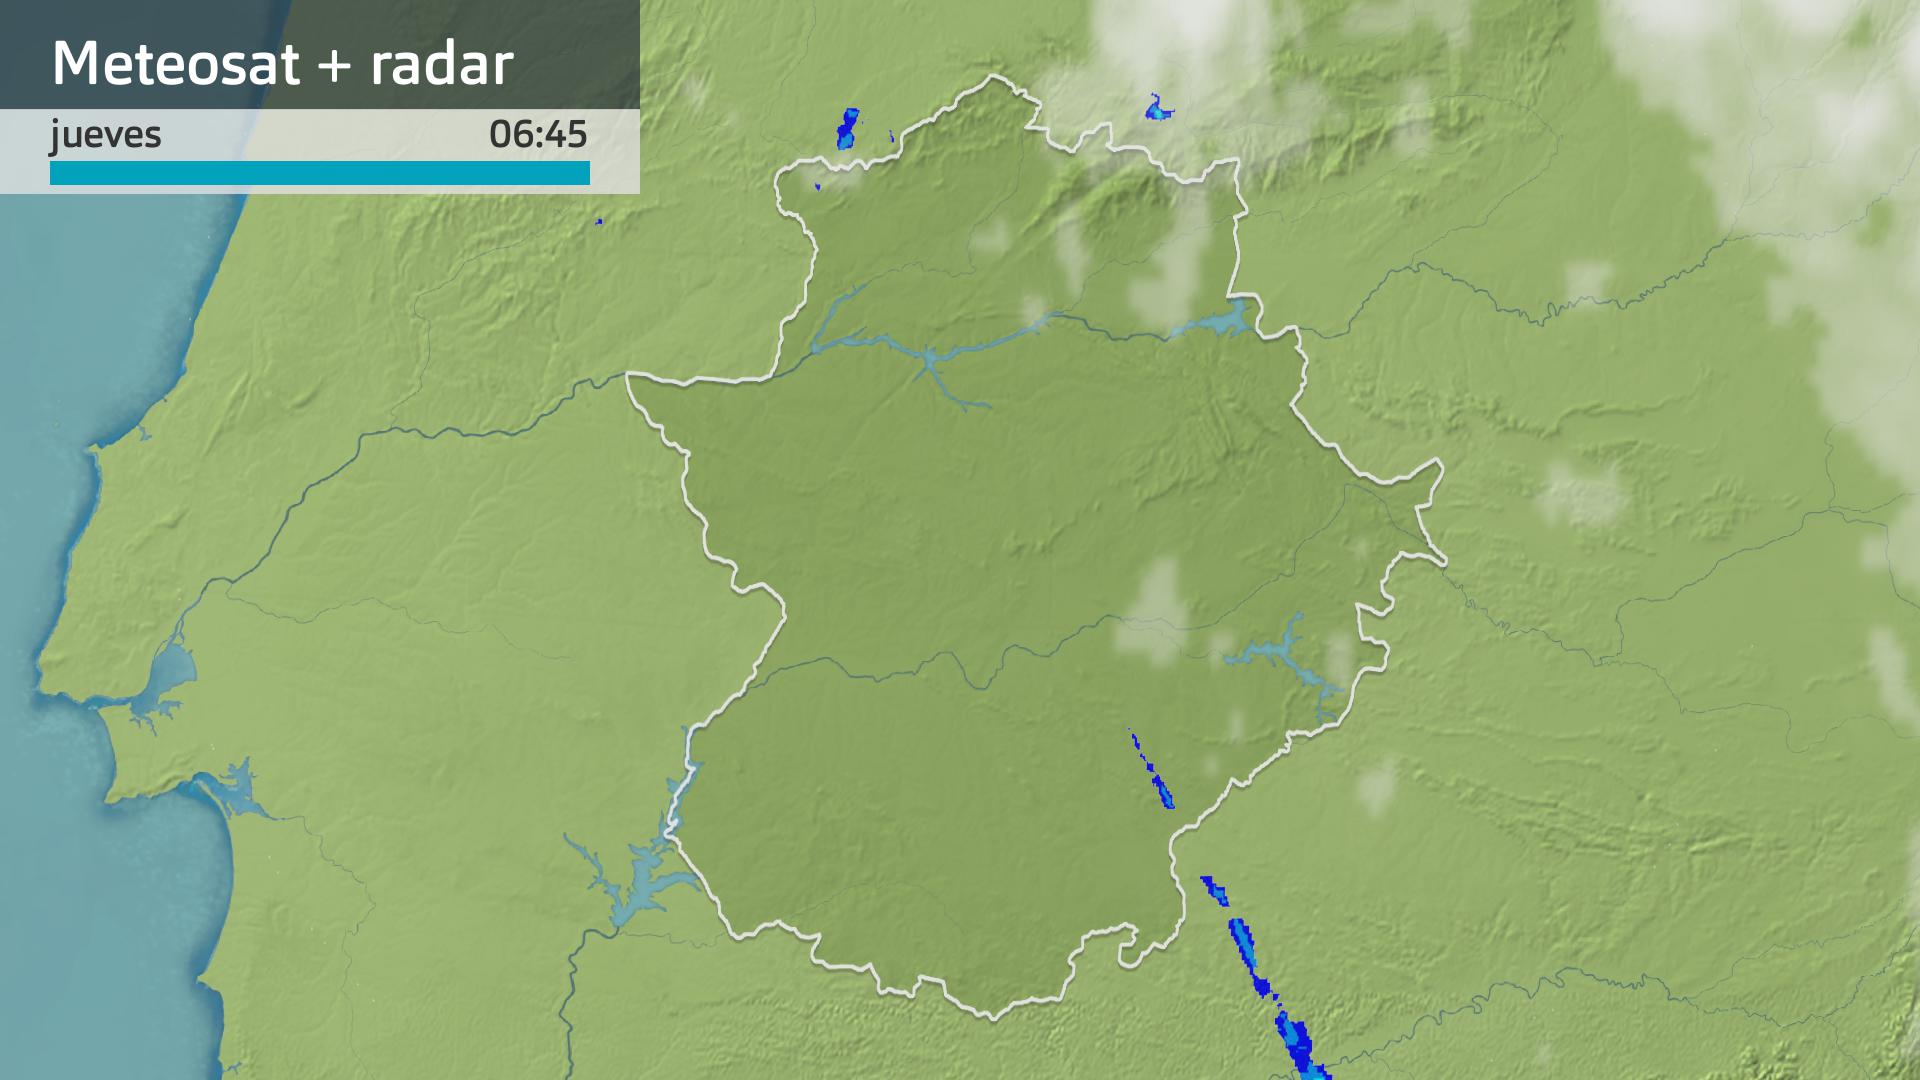 Imagen del Meteosat + radar meteorológico jueves 20 de junio 6:45 h.